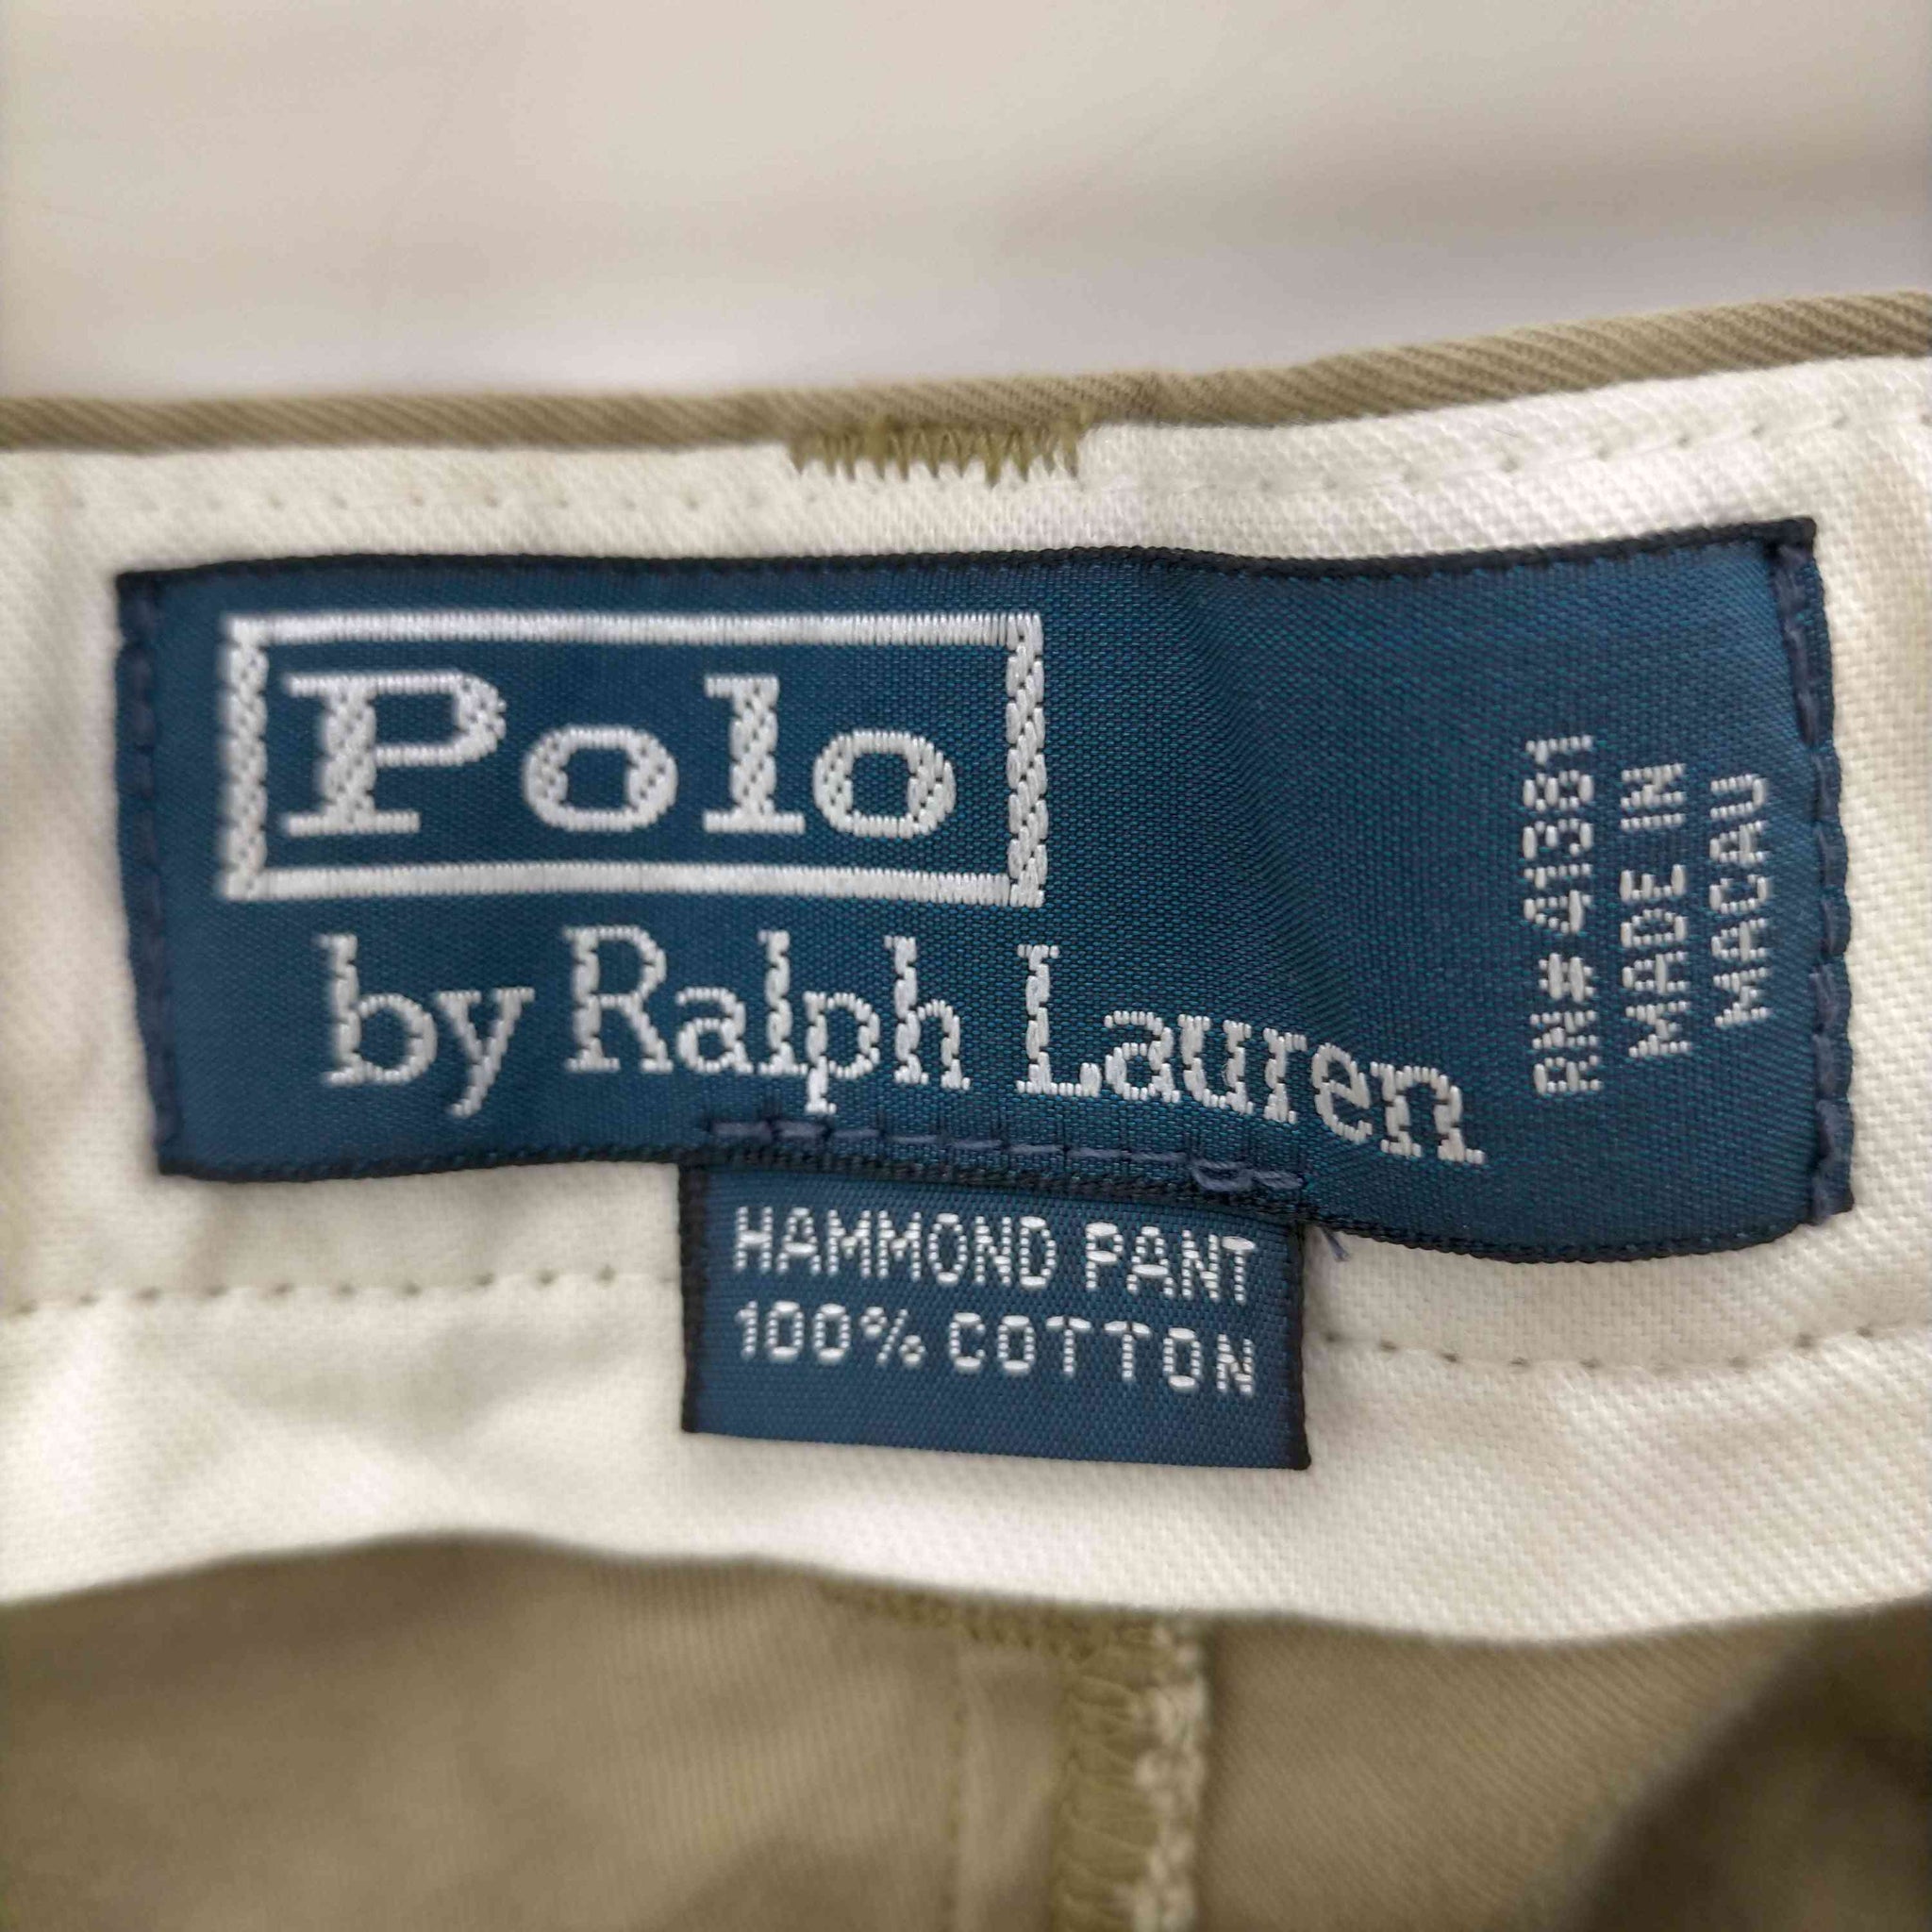 Polo by RALPH LAUREN(ポロバイラルフローレン)HAMMOND PANT 2タックチノパンツ